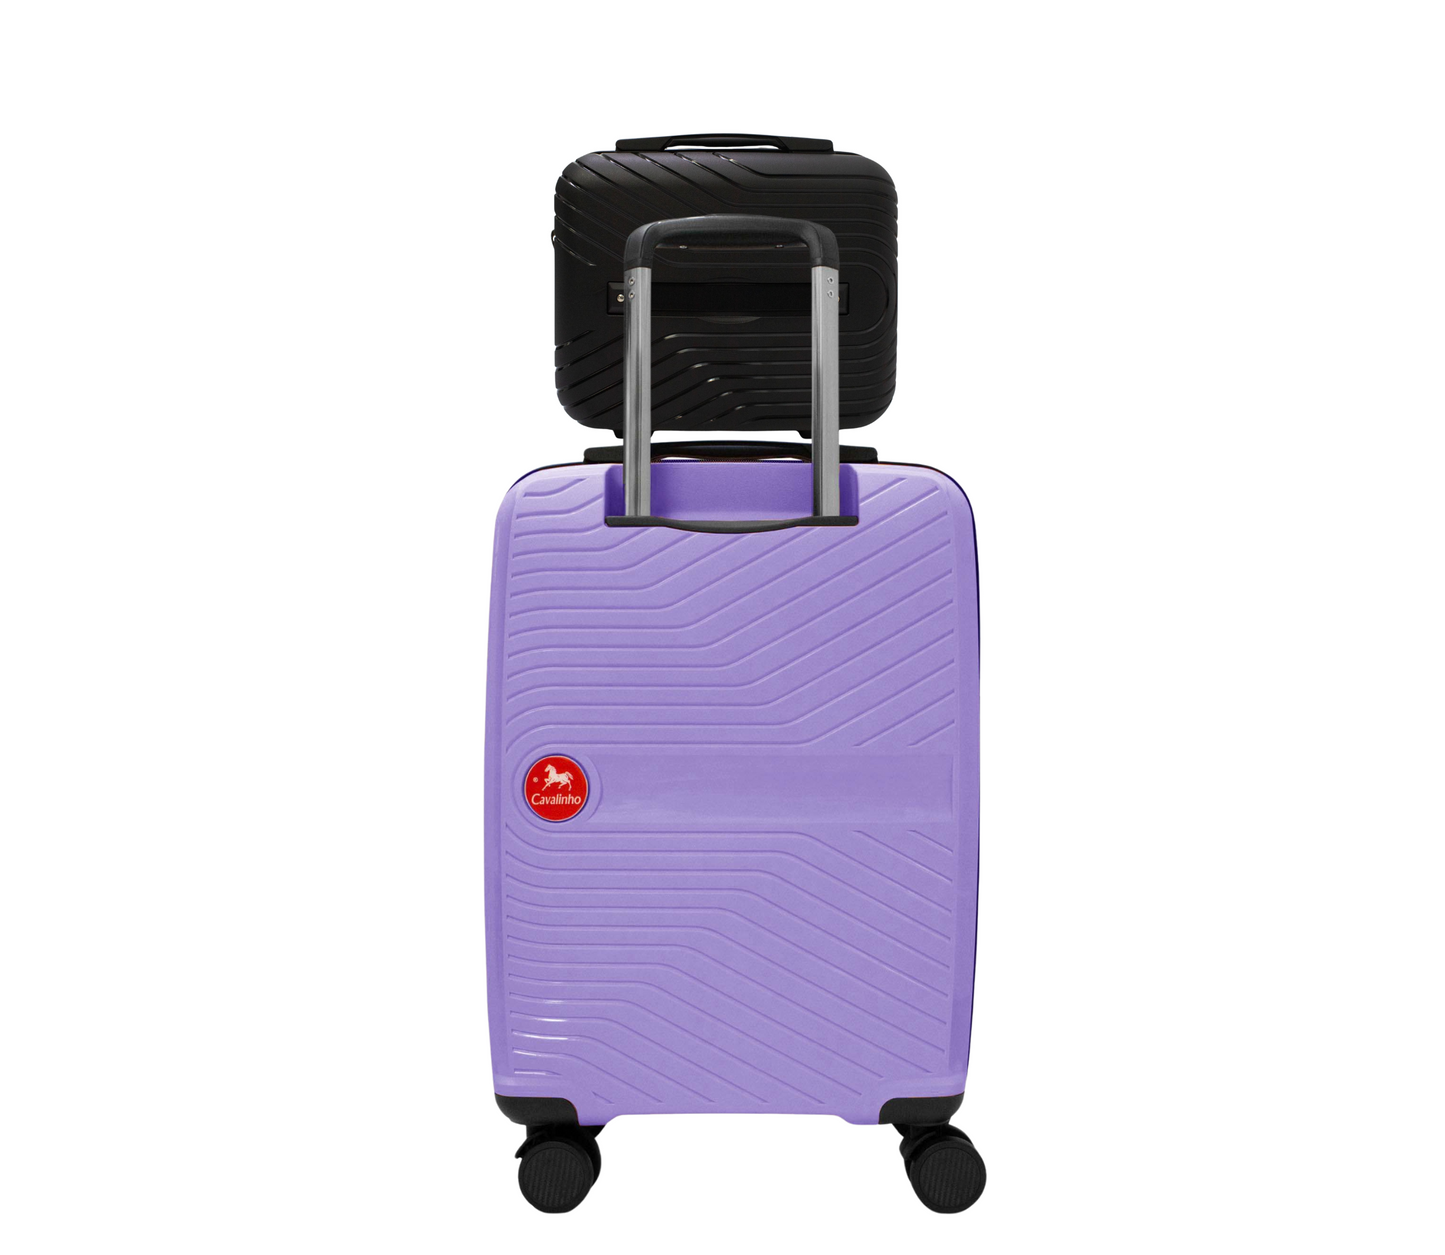 Cavalinho Canada & USA Colorful 2 Piece Luggage Set (15" & 19") - Black Lilac - 68020004.0139.S1519._2